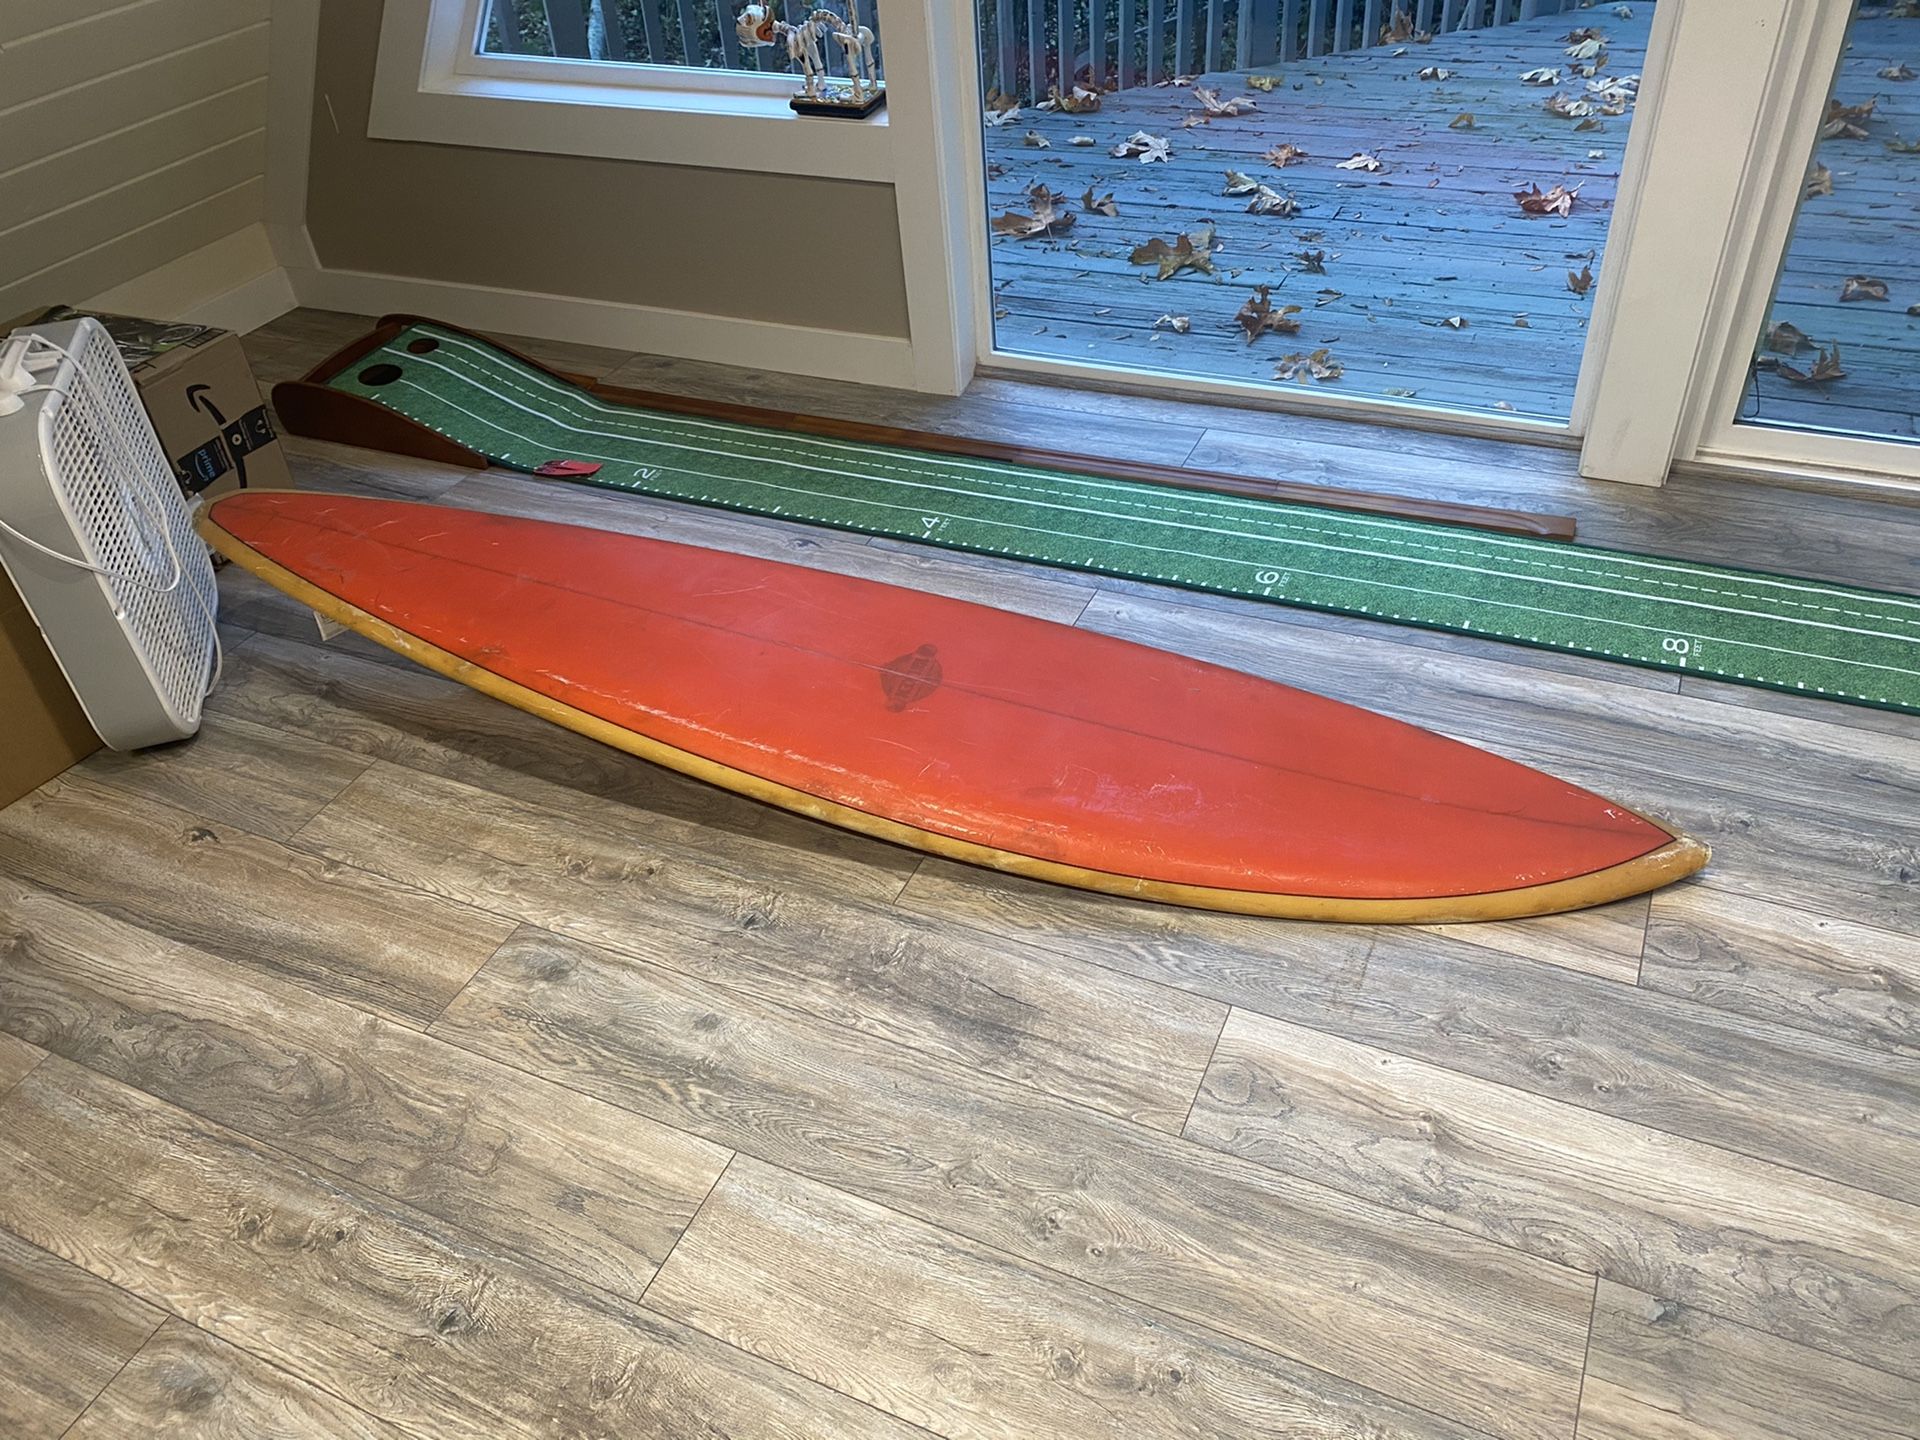 Vintage Wilken surfboard 50’s - 60’s era